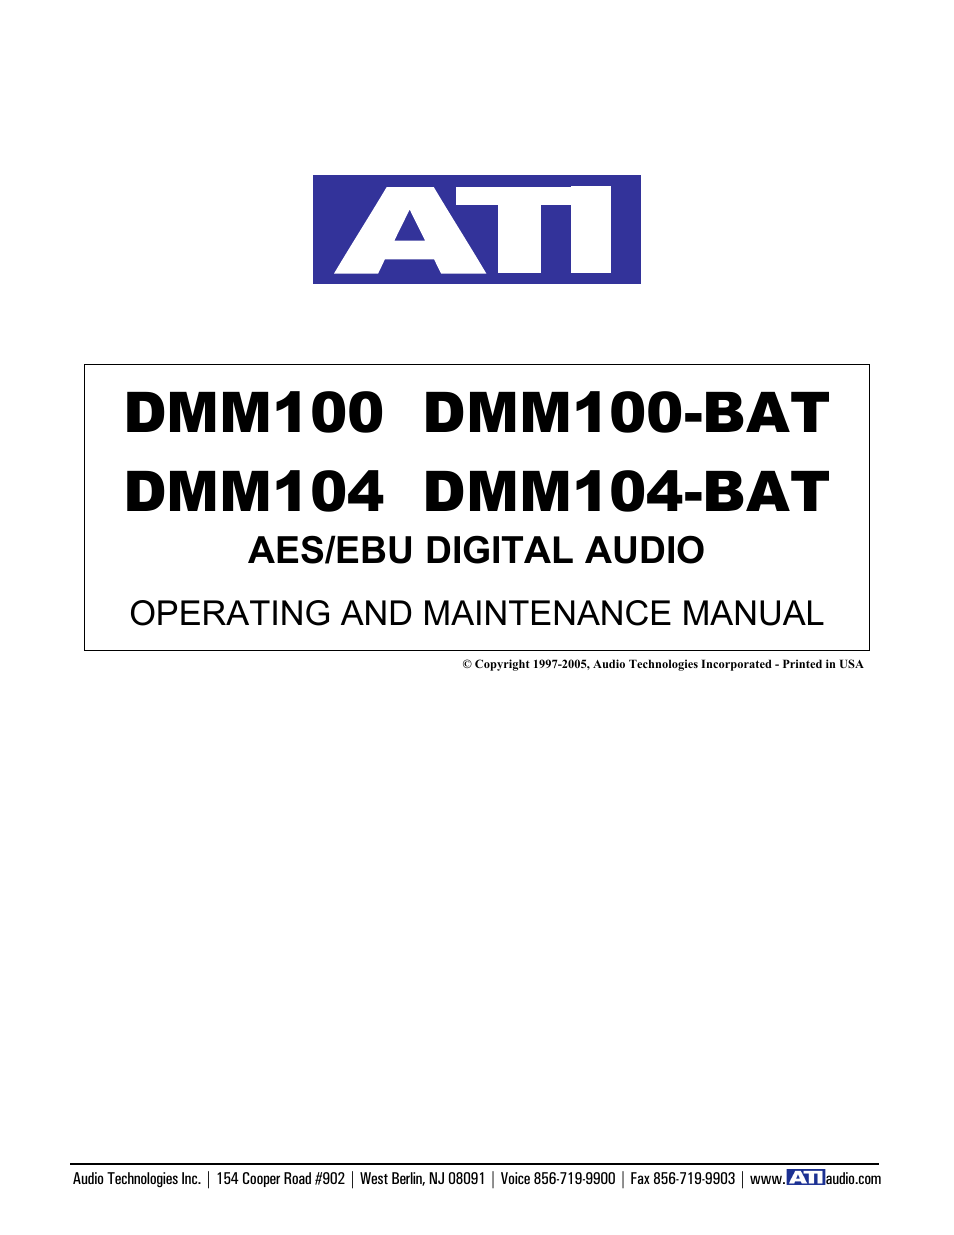 DMM100-BAT